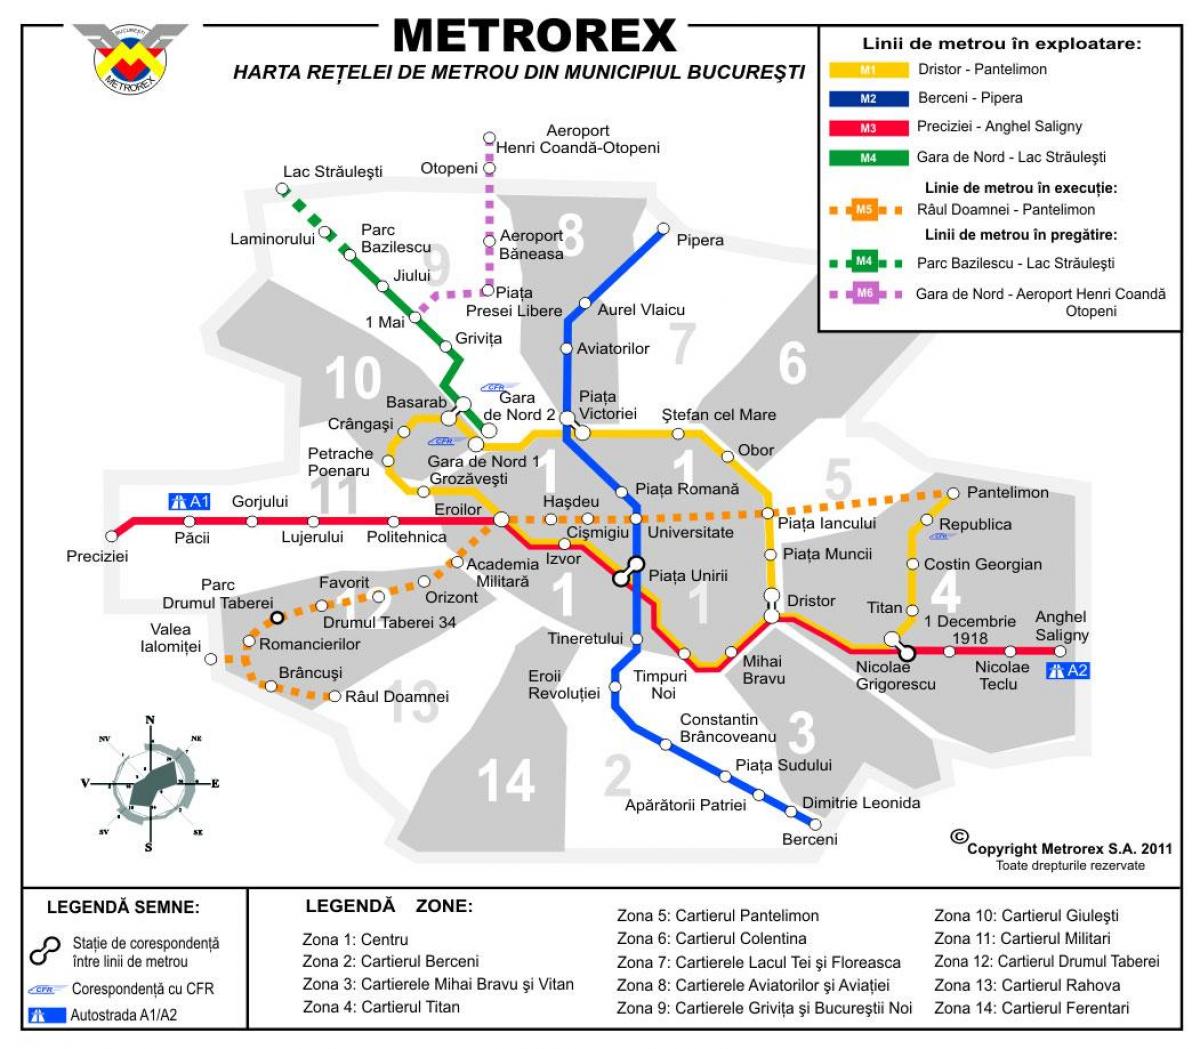 Peta metrorex 